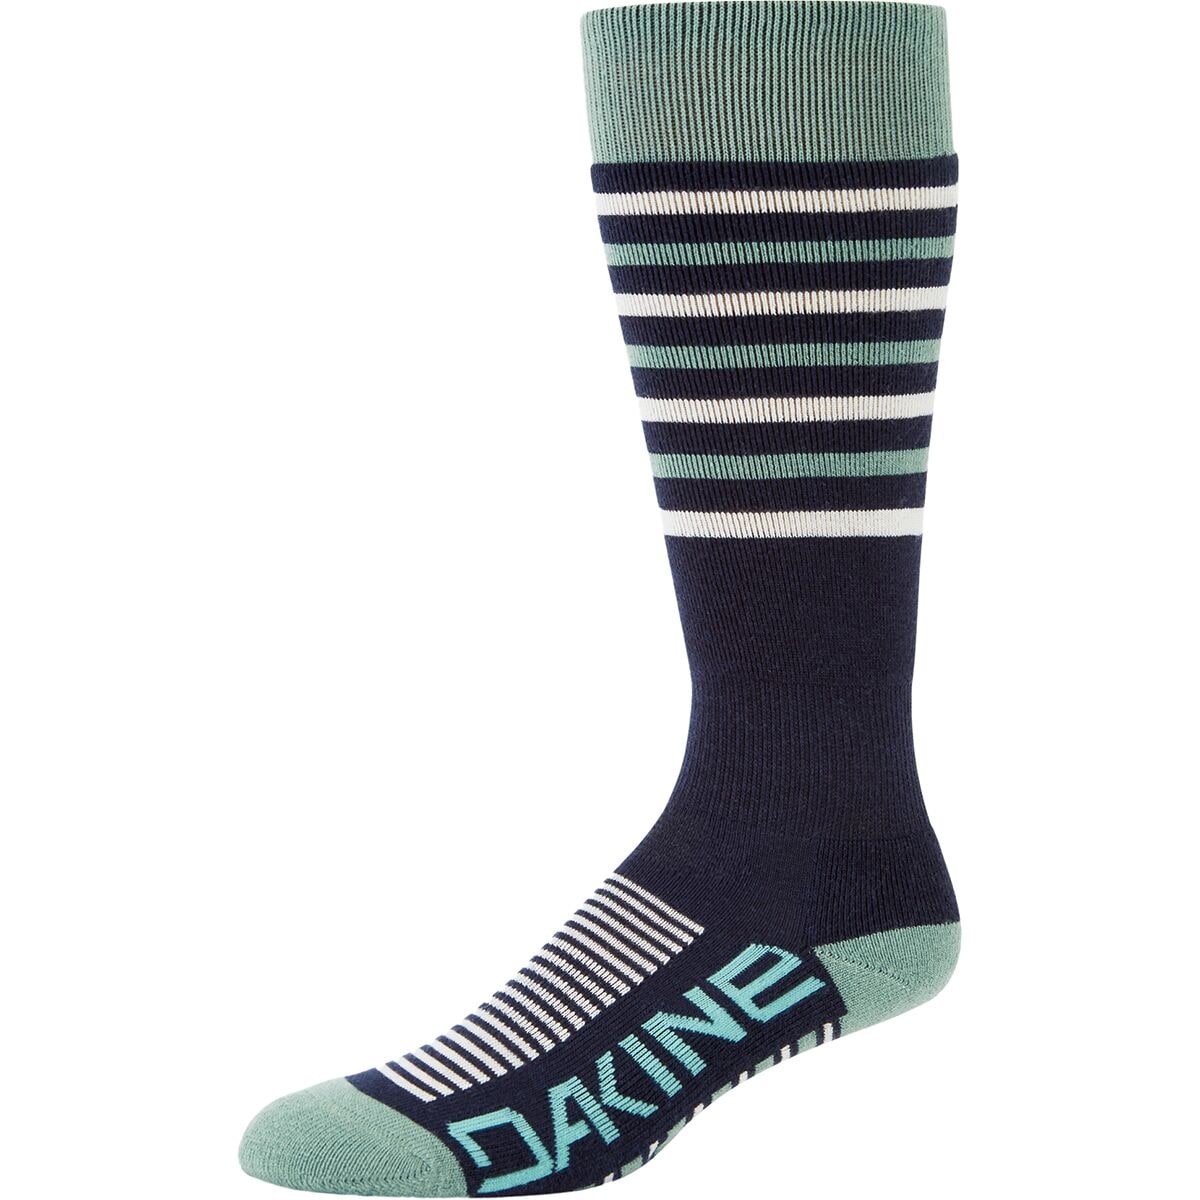 DAKINE Summit Sock - Women's